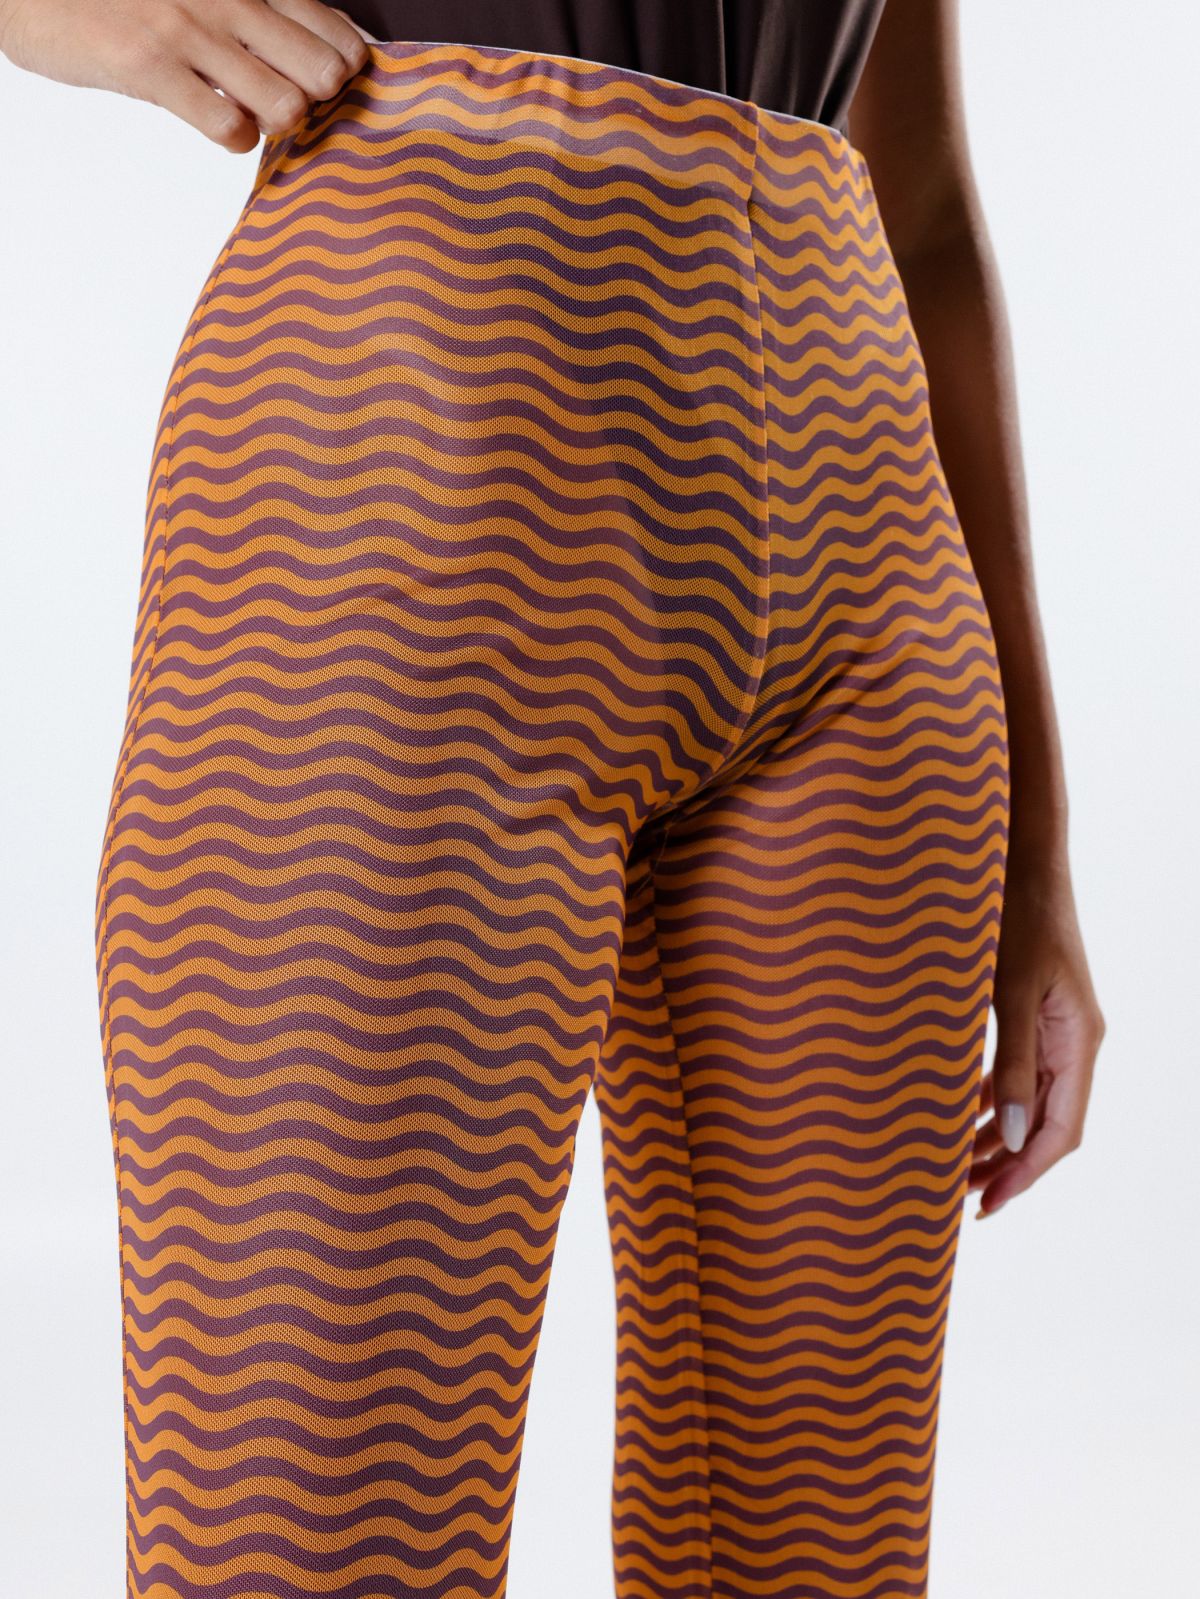  מכנסיים ארוכים שקפקפים בהדפס גלים של TERMINAL X